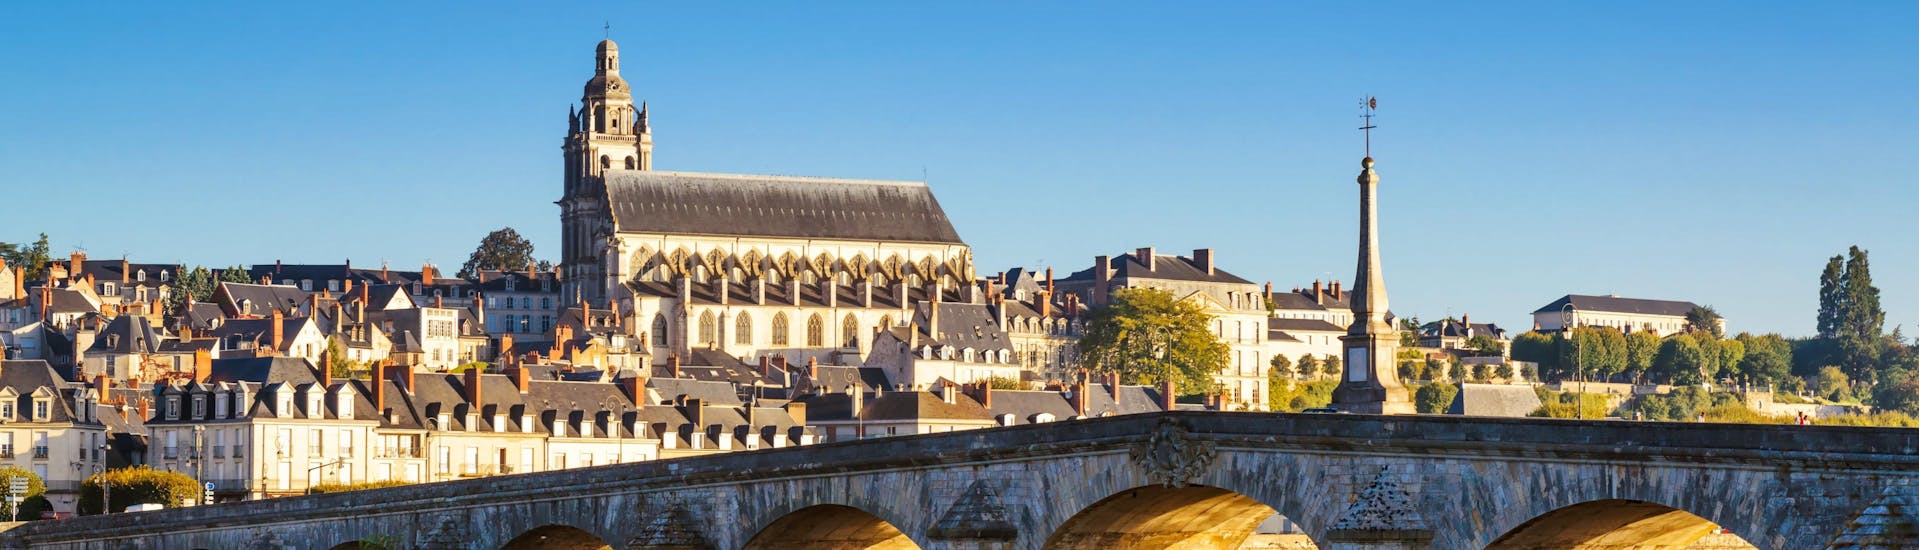 Vue des bords de Loire à Blois, une destination prisée des amateurs de montgolfières, avec ses nombreux châteaux alentour.